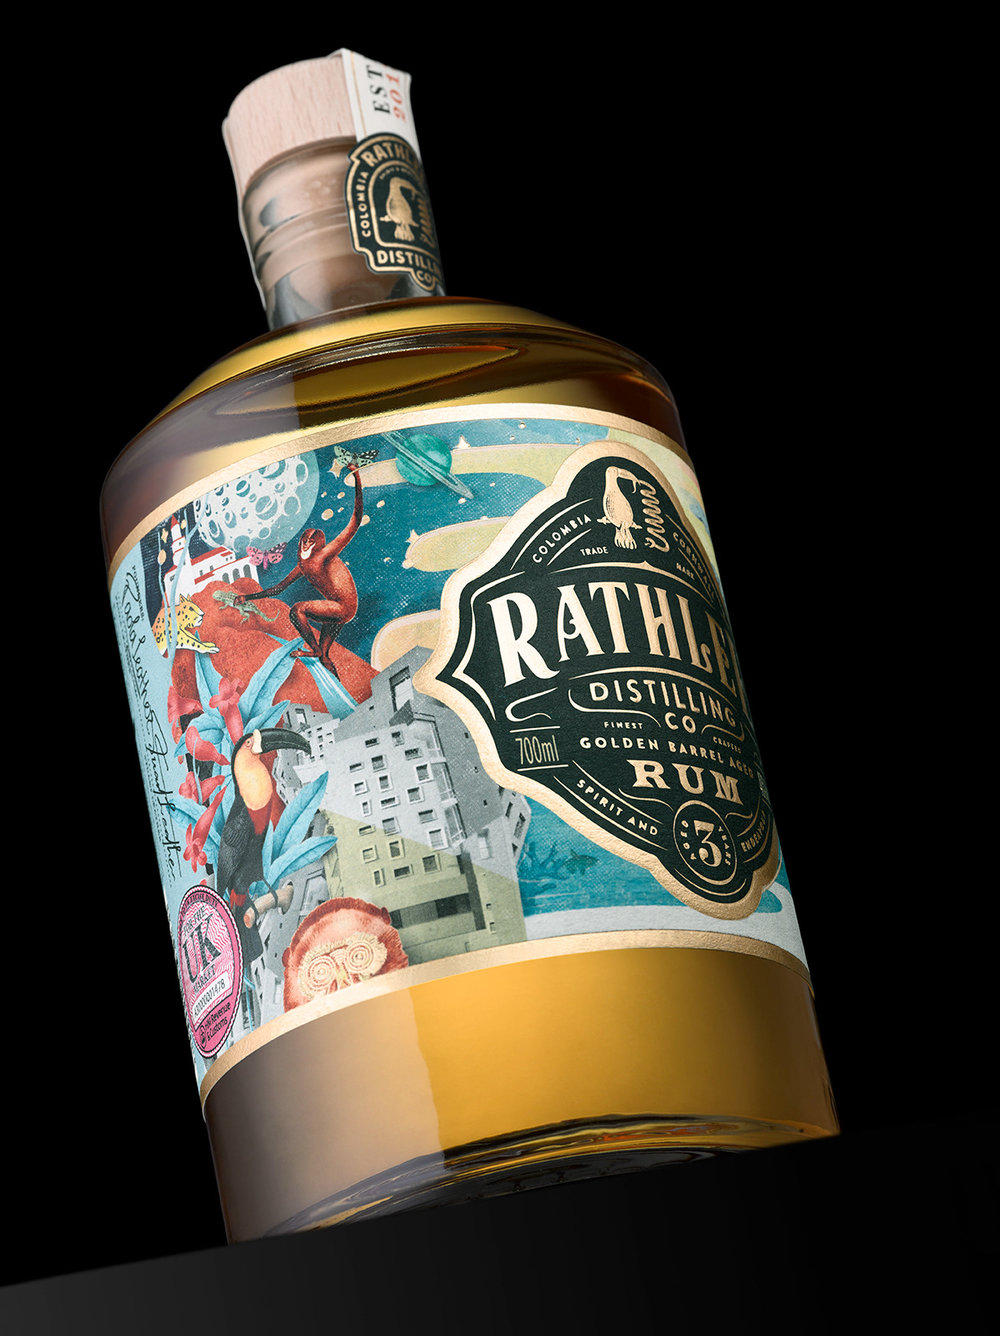 Eminente Rum packaging and branding by Stranger & Stranger